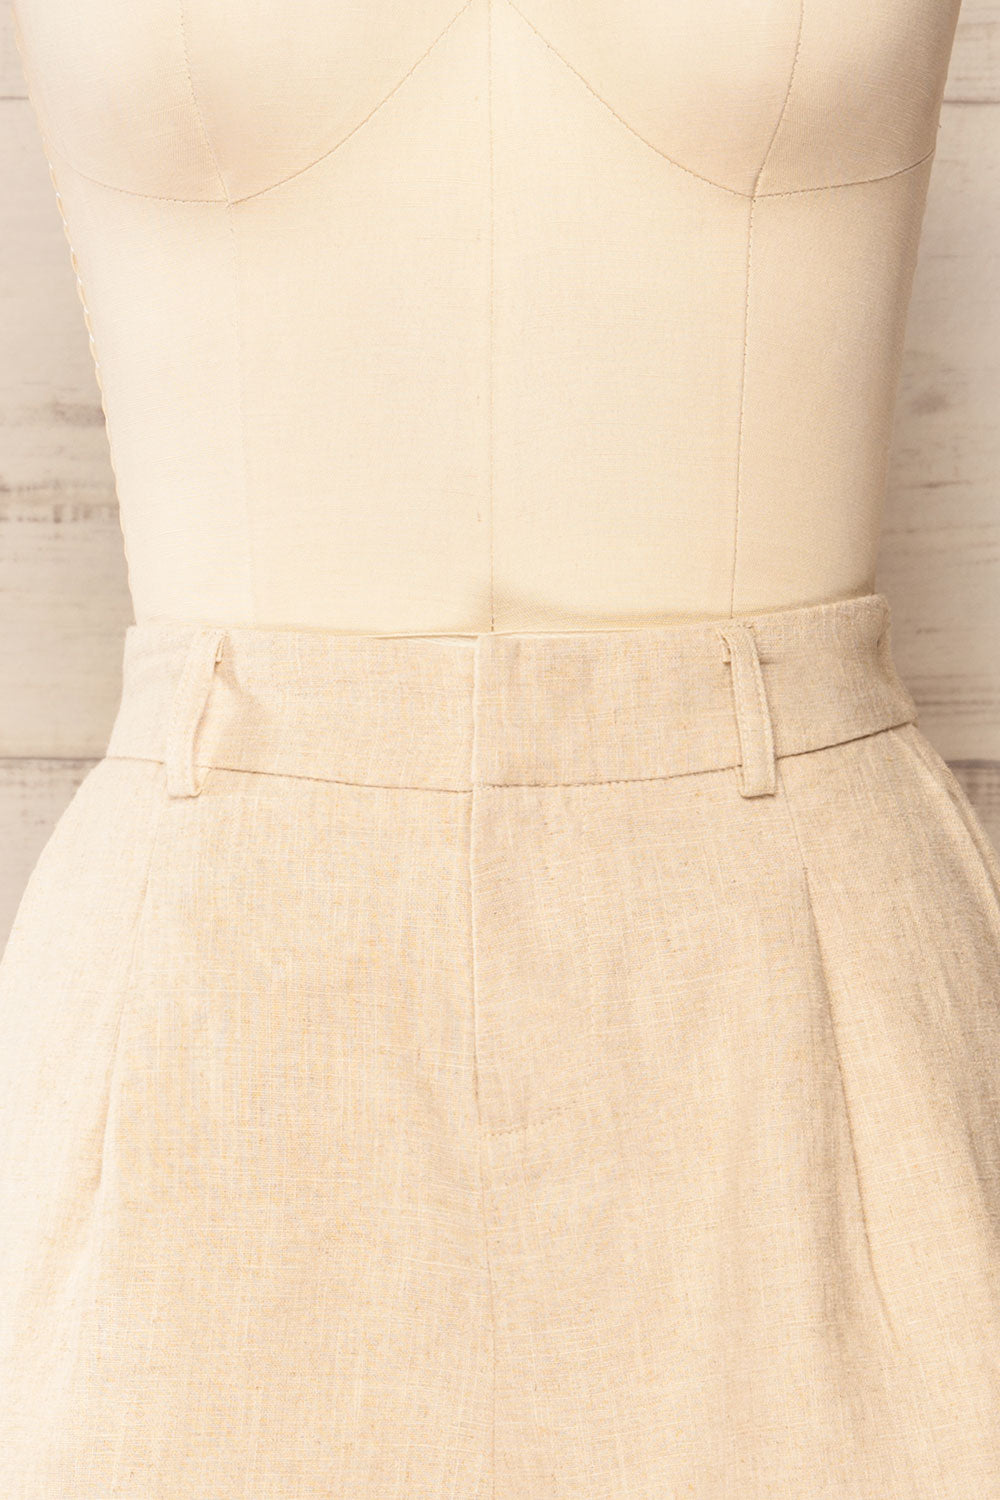 Lokeren Beige High-Waisted Linen Shorts | La petite garçonne front close-up